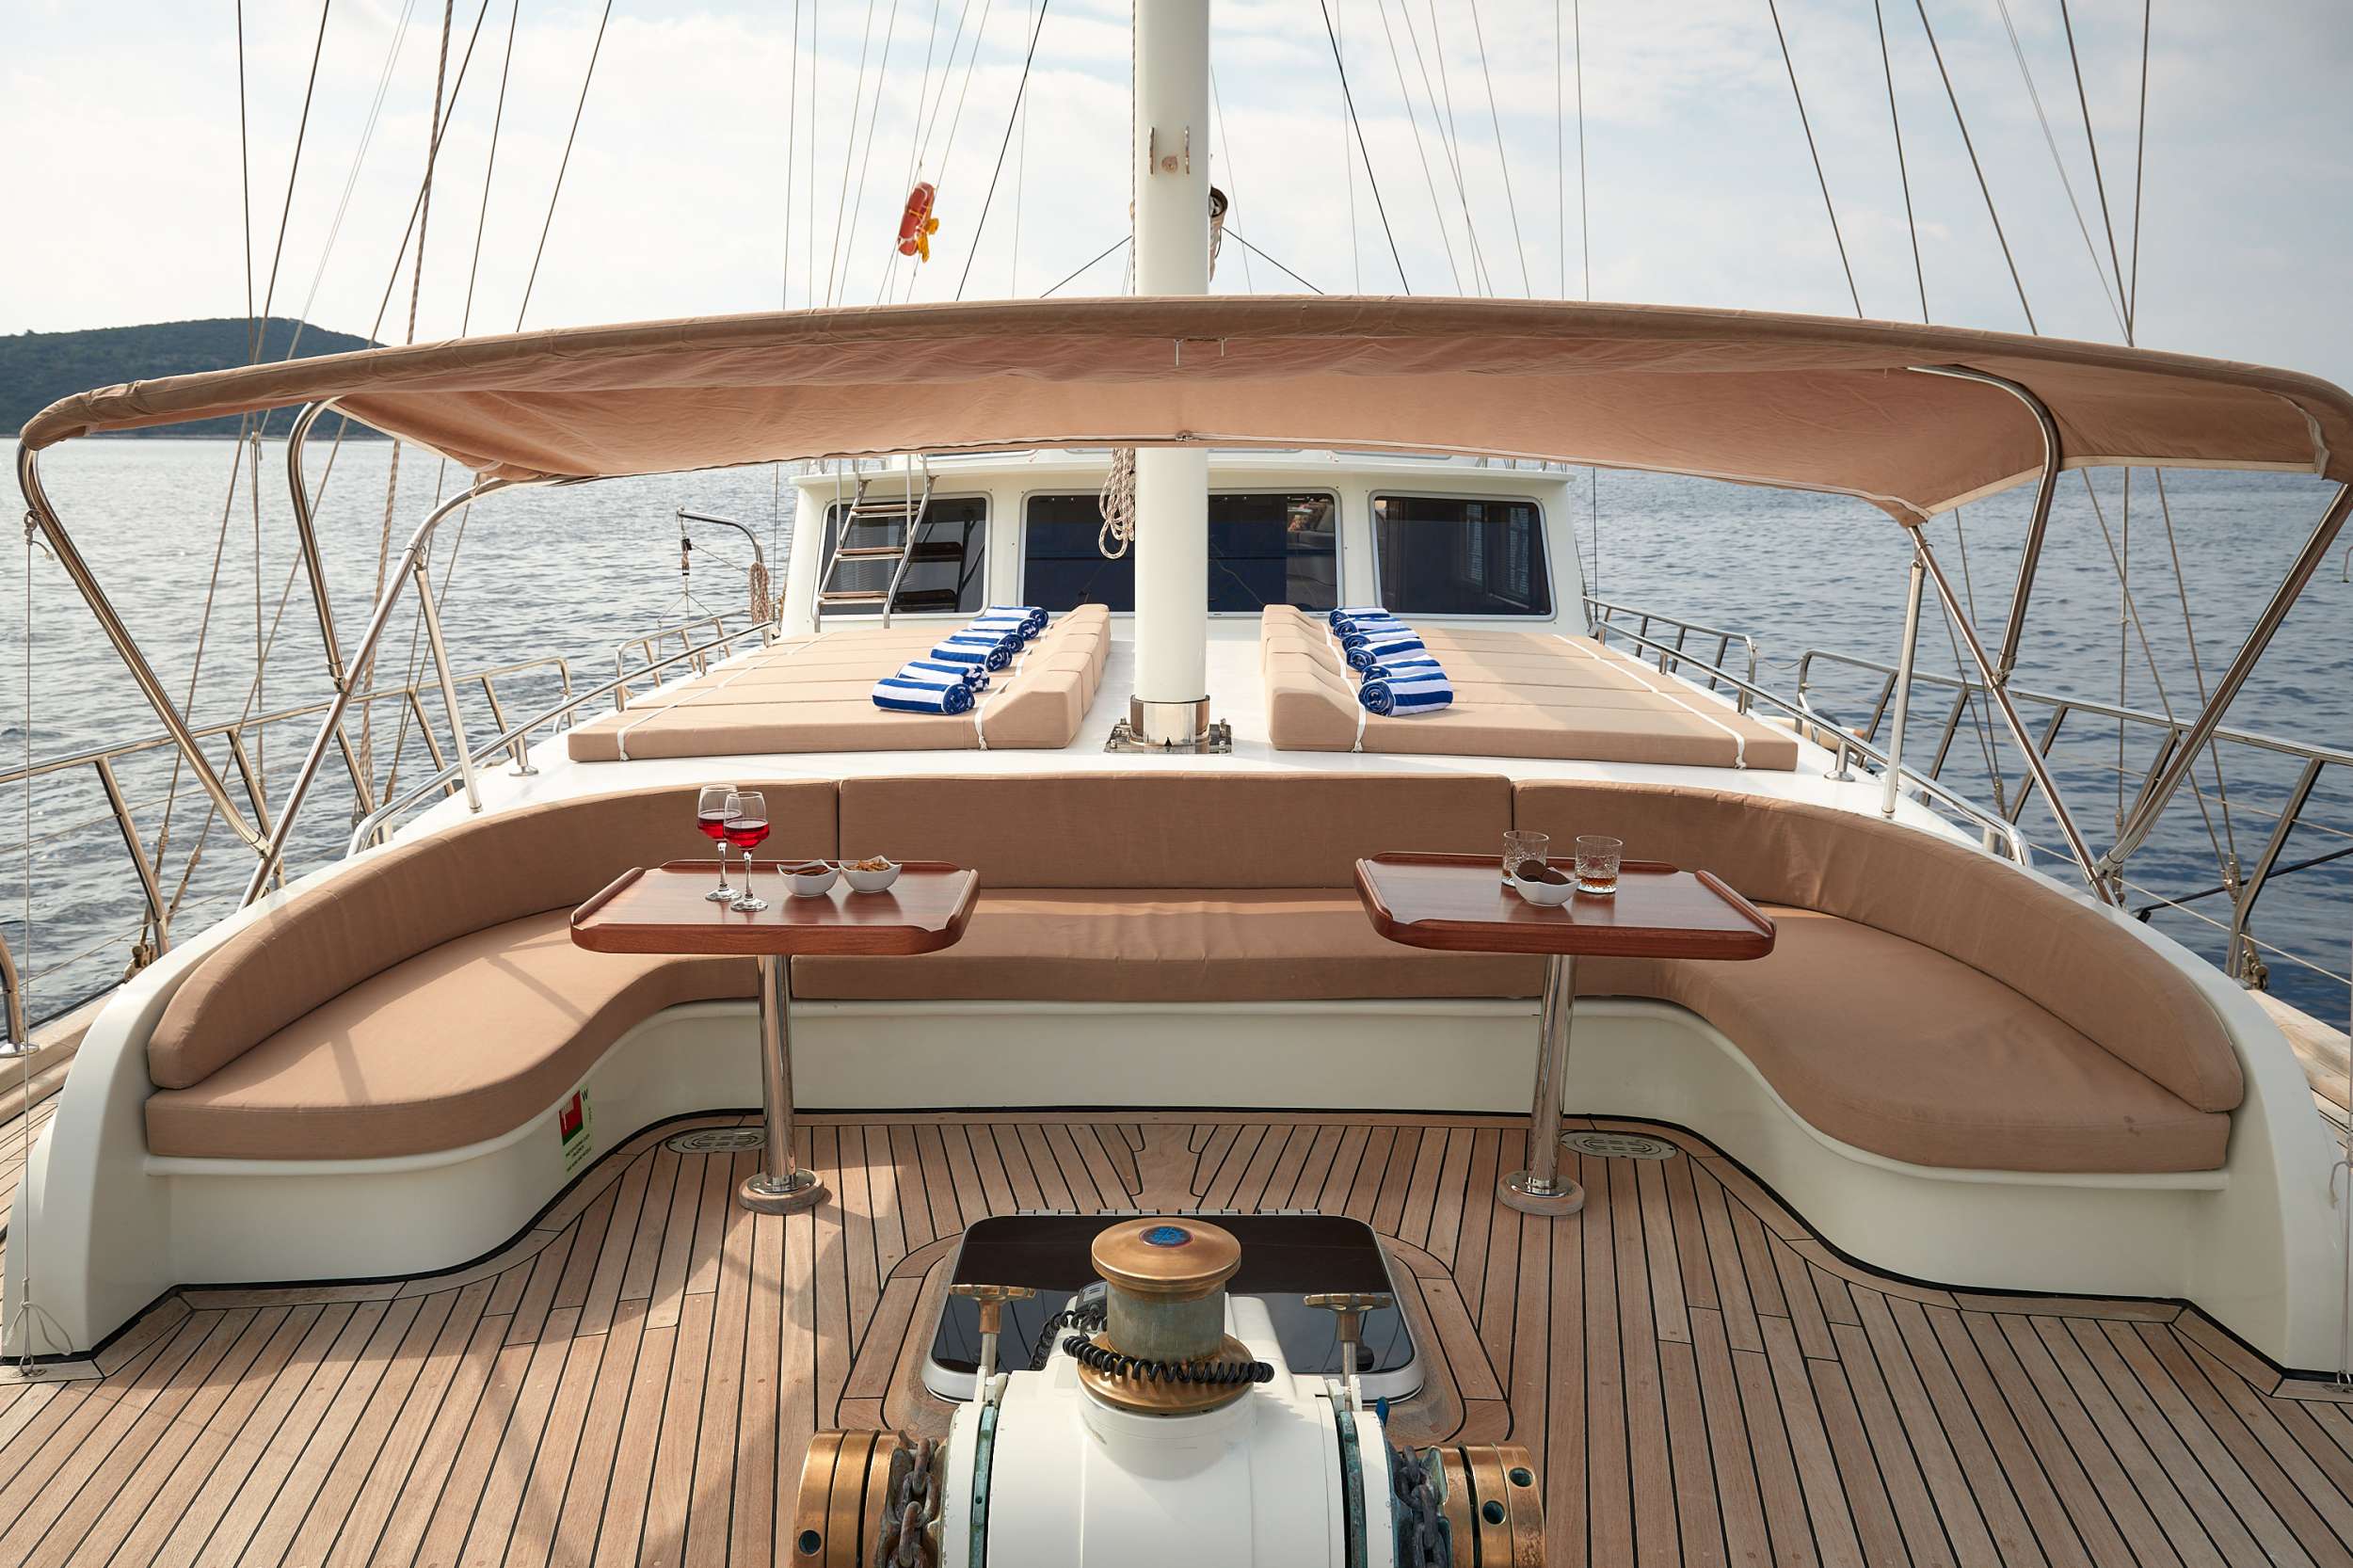 SEA BREEZE - Yacht Charter Rijeka & Boat hire in Croatia 5